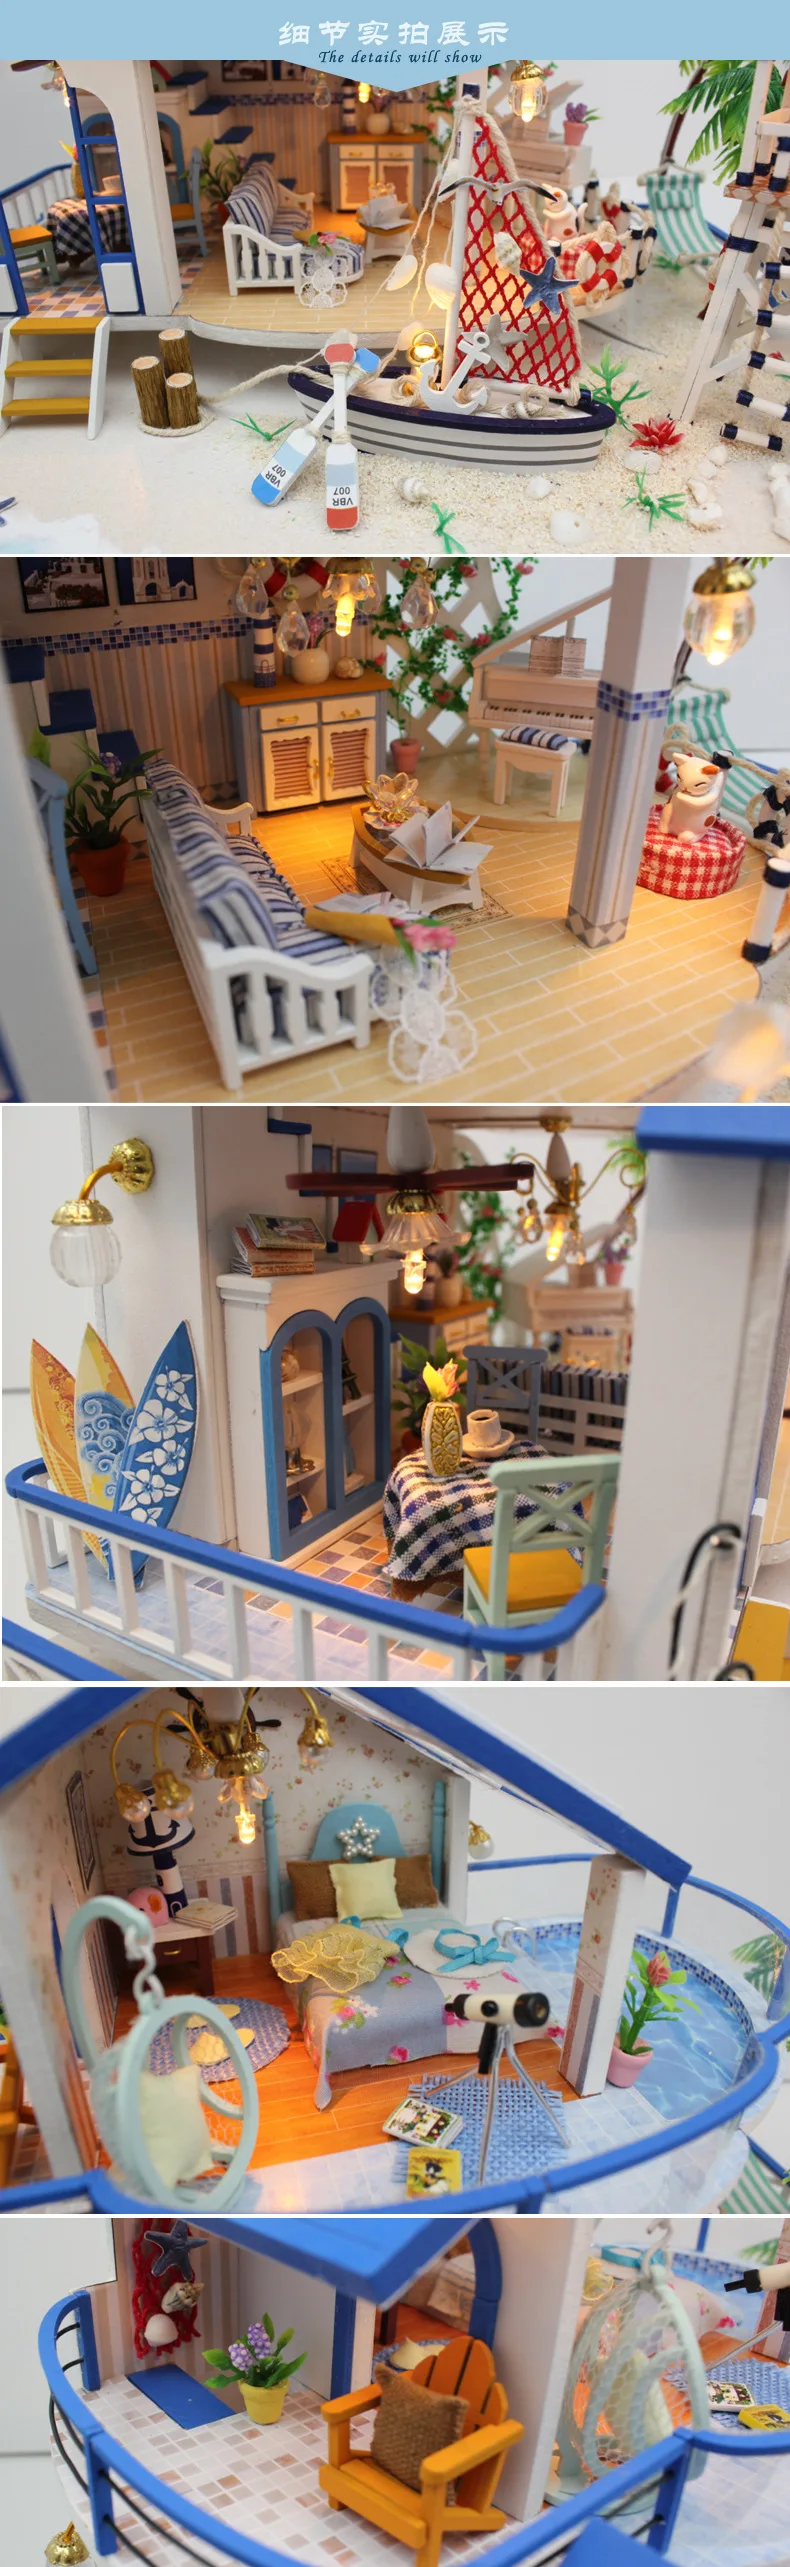 Кукольные домики мебельный набор ручной работы tosminiature Diy деревянный кукольный дом Миниатюрный ручной работы для ldren Girl подарок Легенда синее море